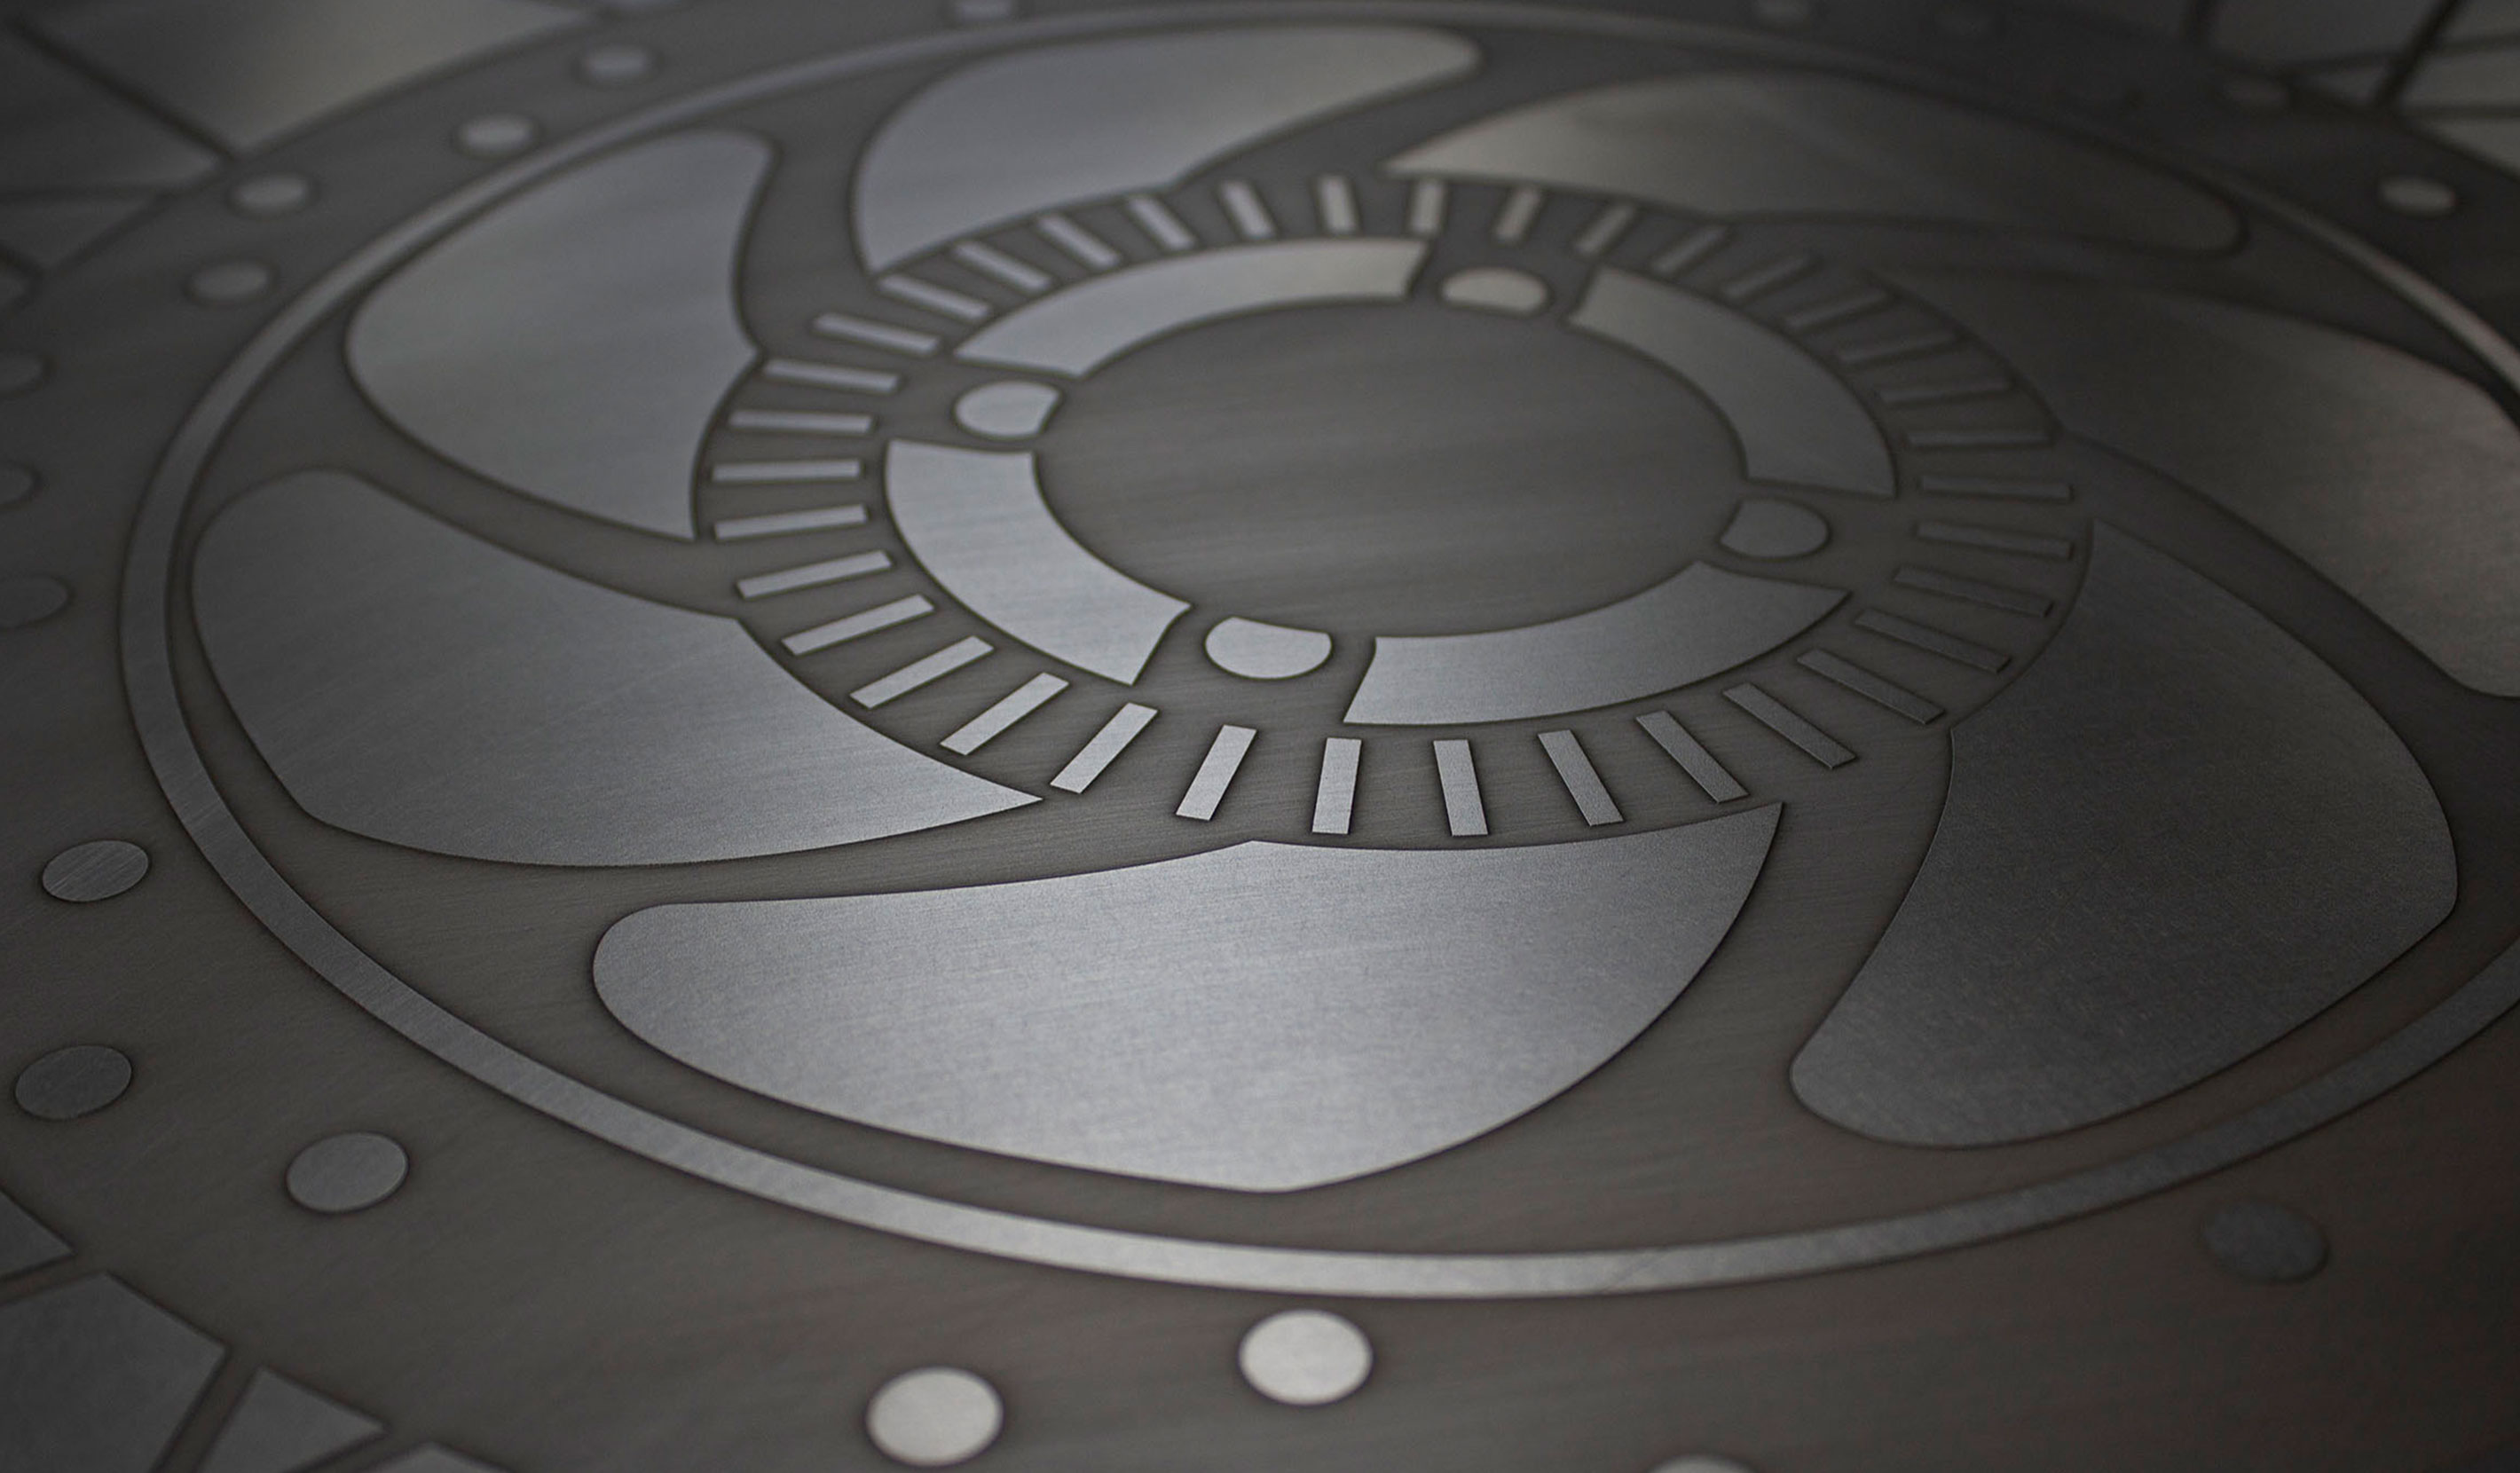 Space-worldwide-Royal Enfield branding material design metal